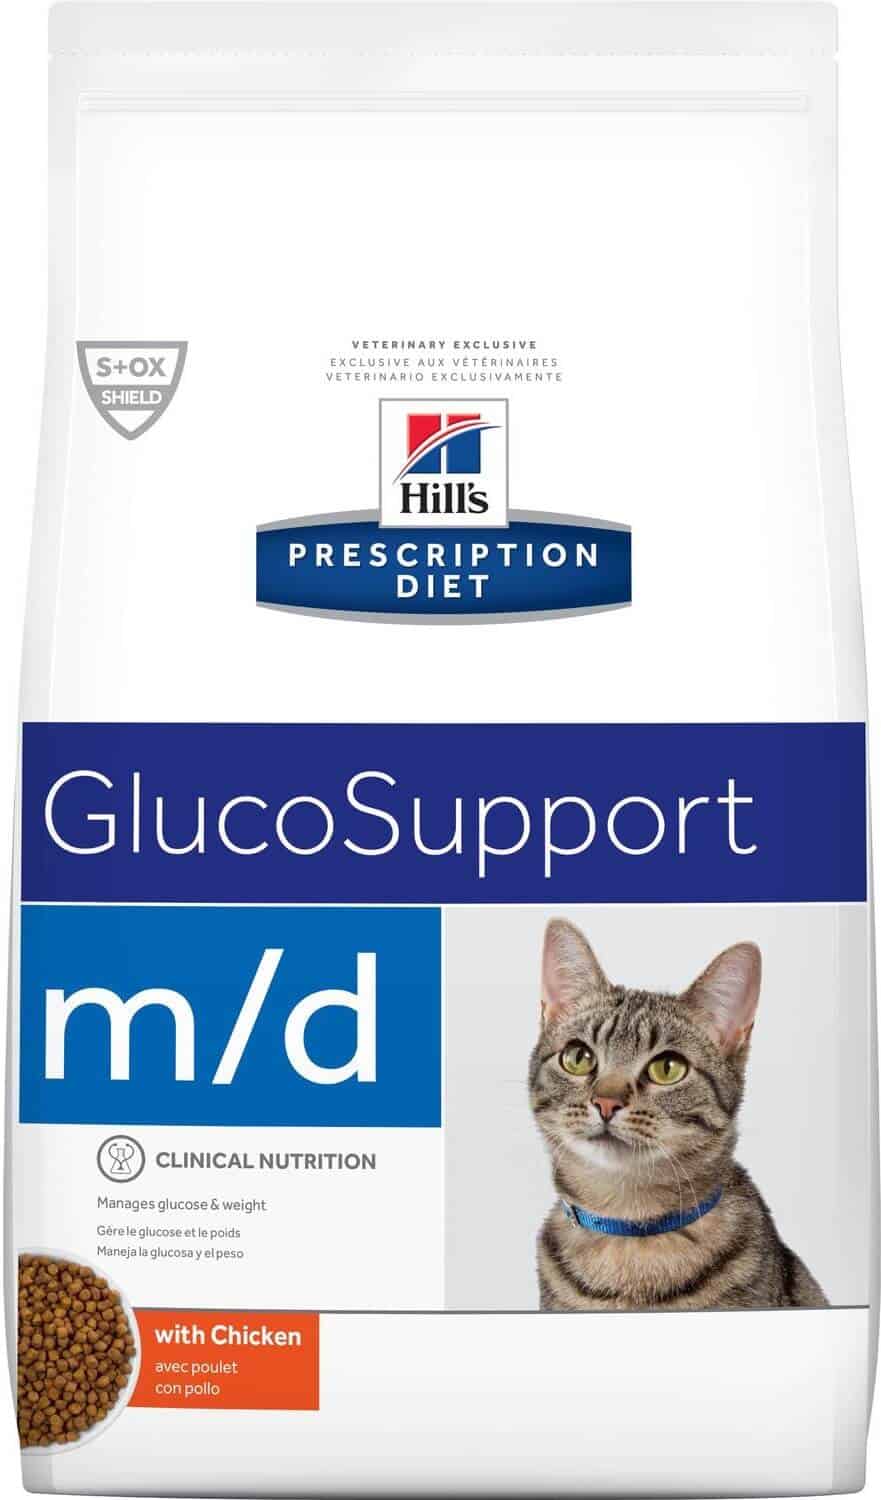 Hills m/d cat food